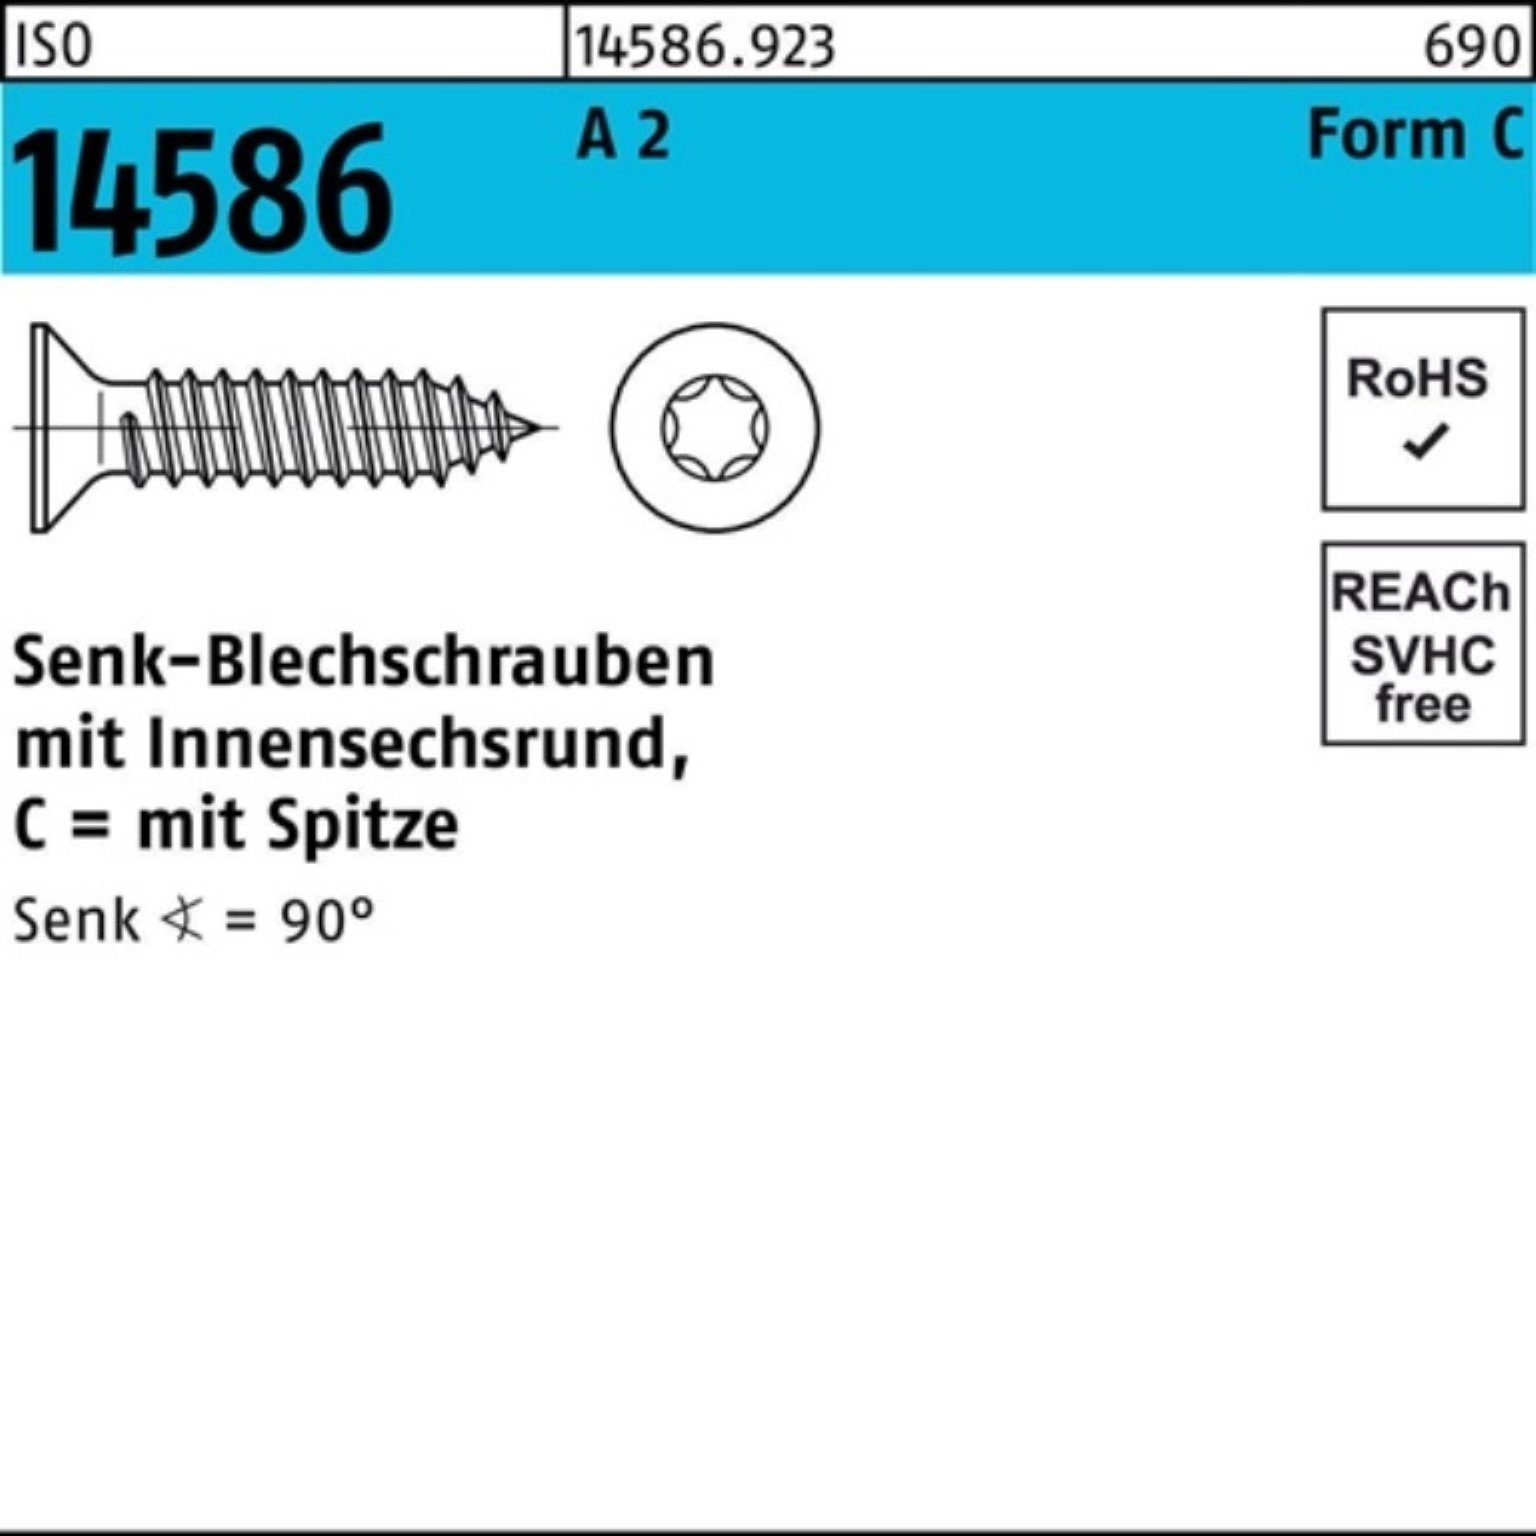 ISO 13 Reyher ISR/Spitze Schraube T25 14586 5 A 500er Pack 5,5x 2 Senkblechschraube -C